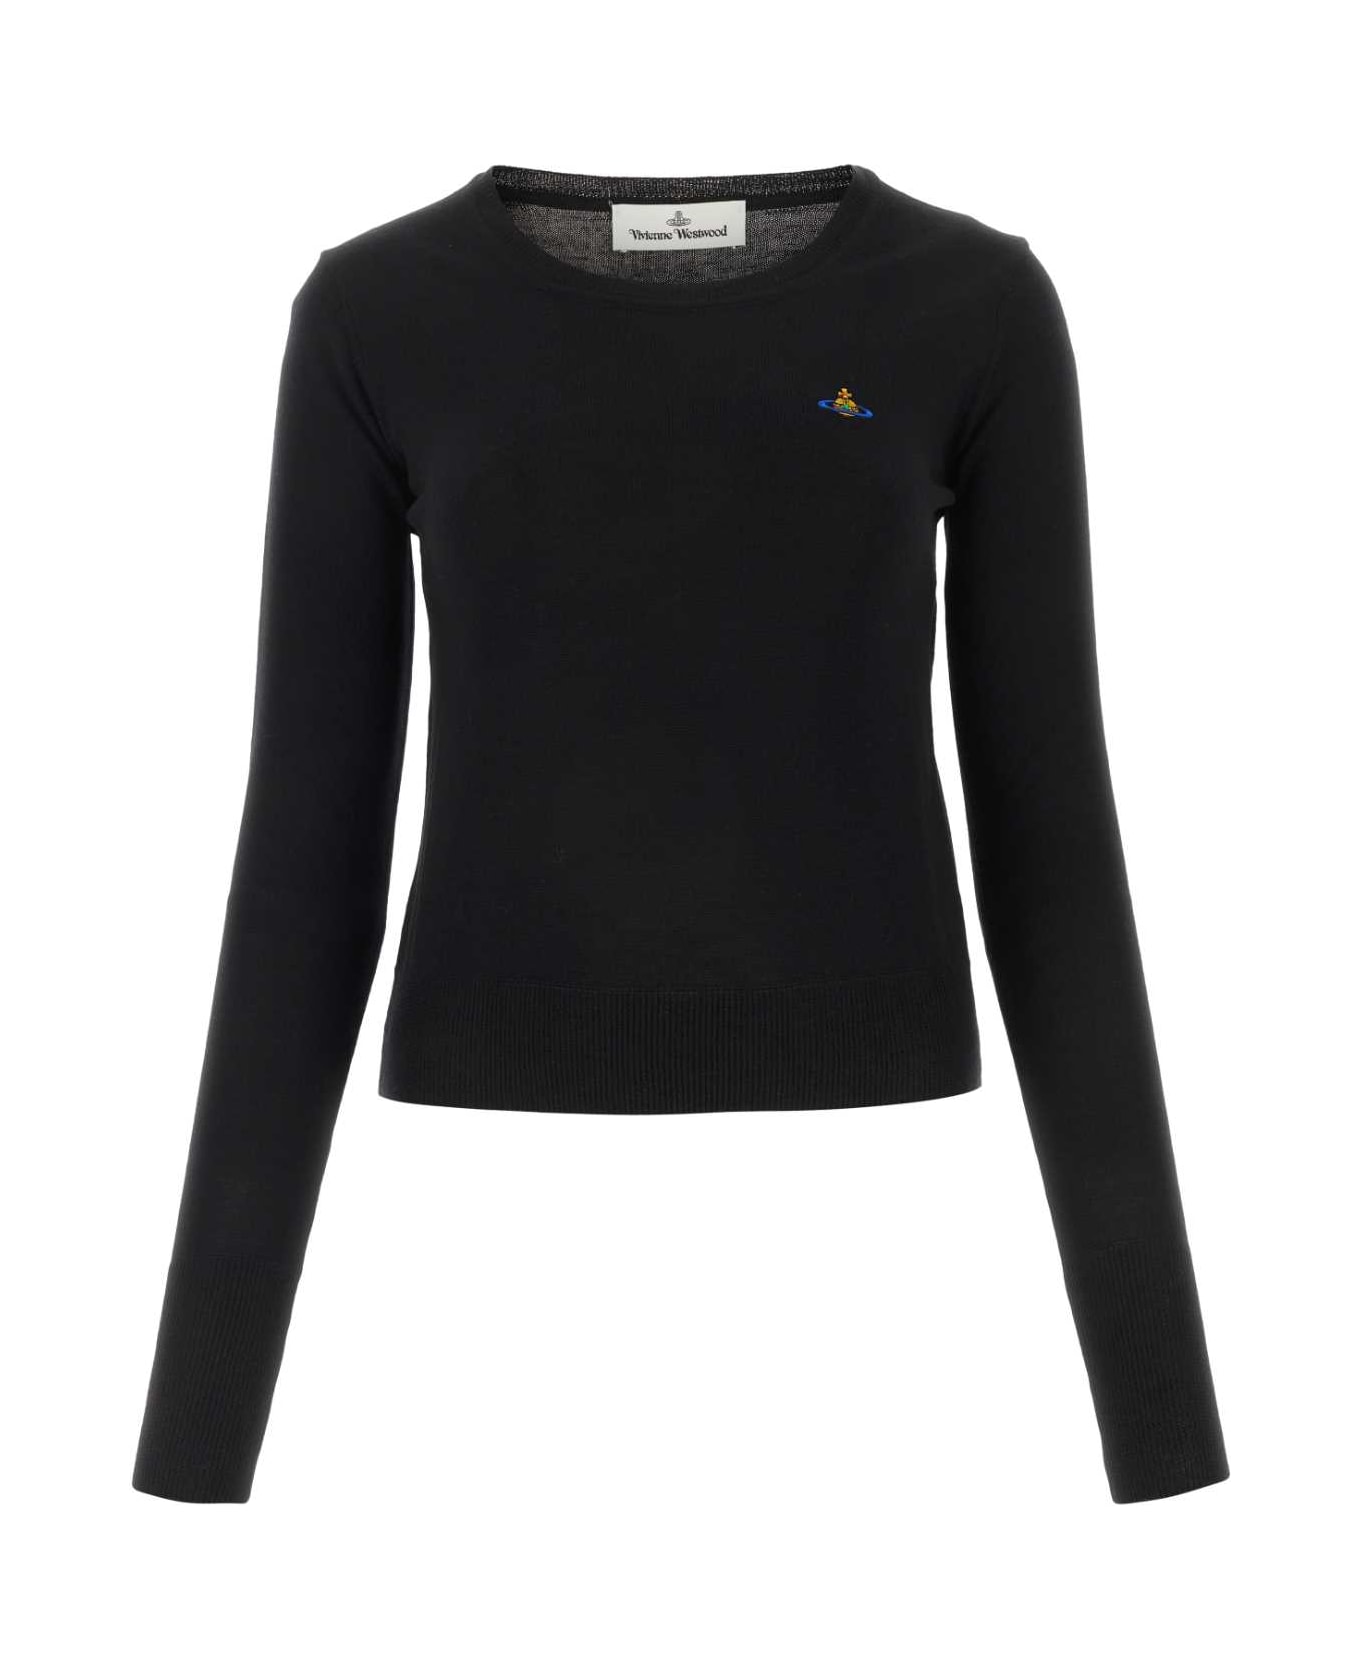 Vivienne Westwood Black Wool Sweater - N403